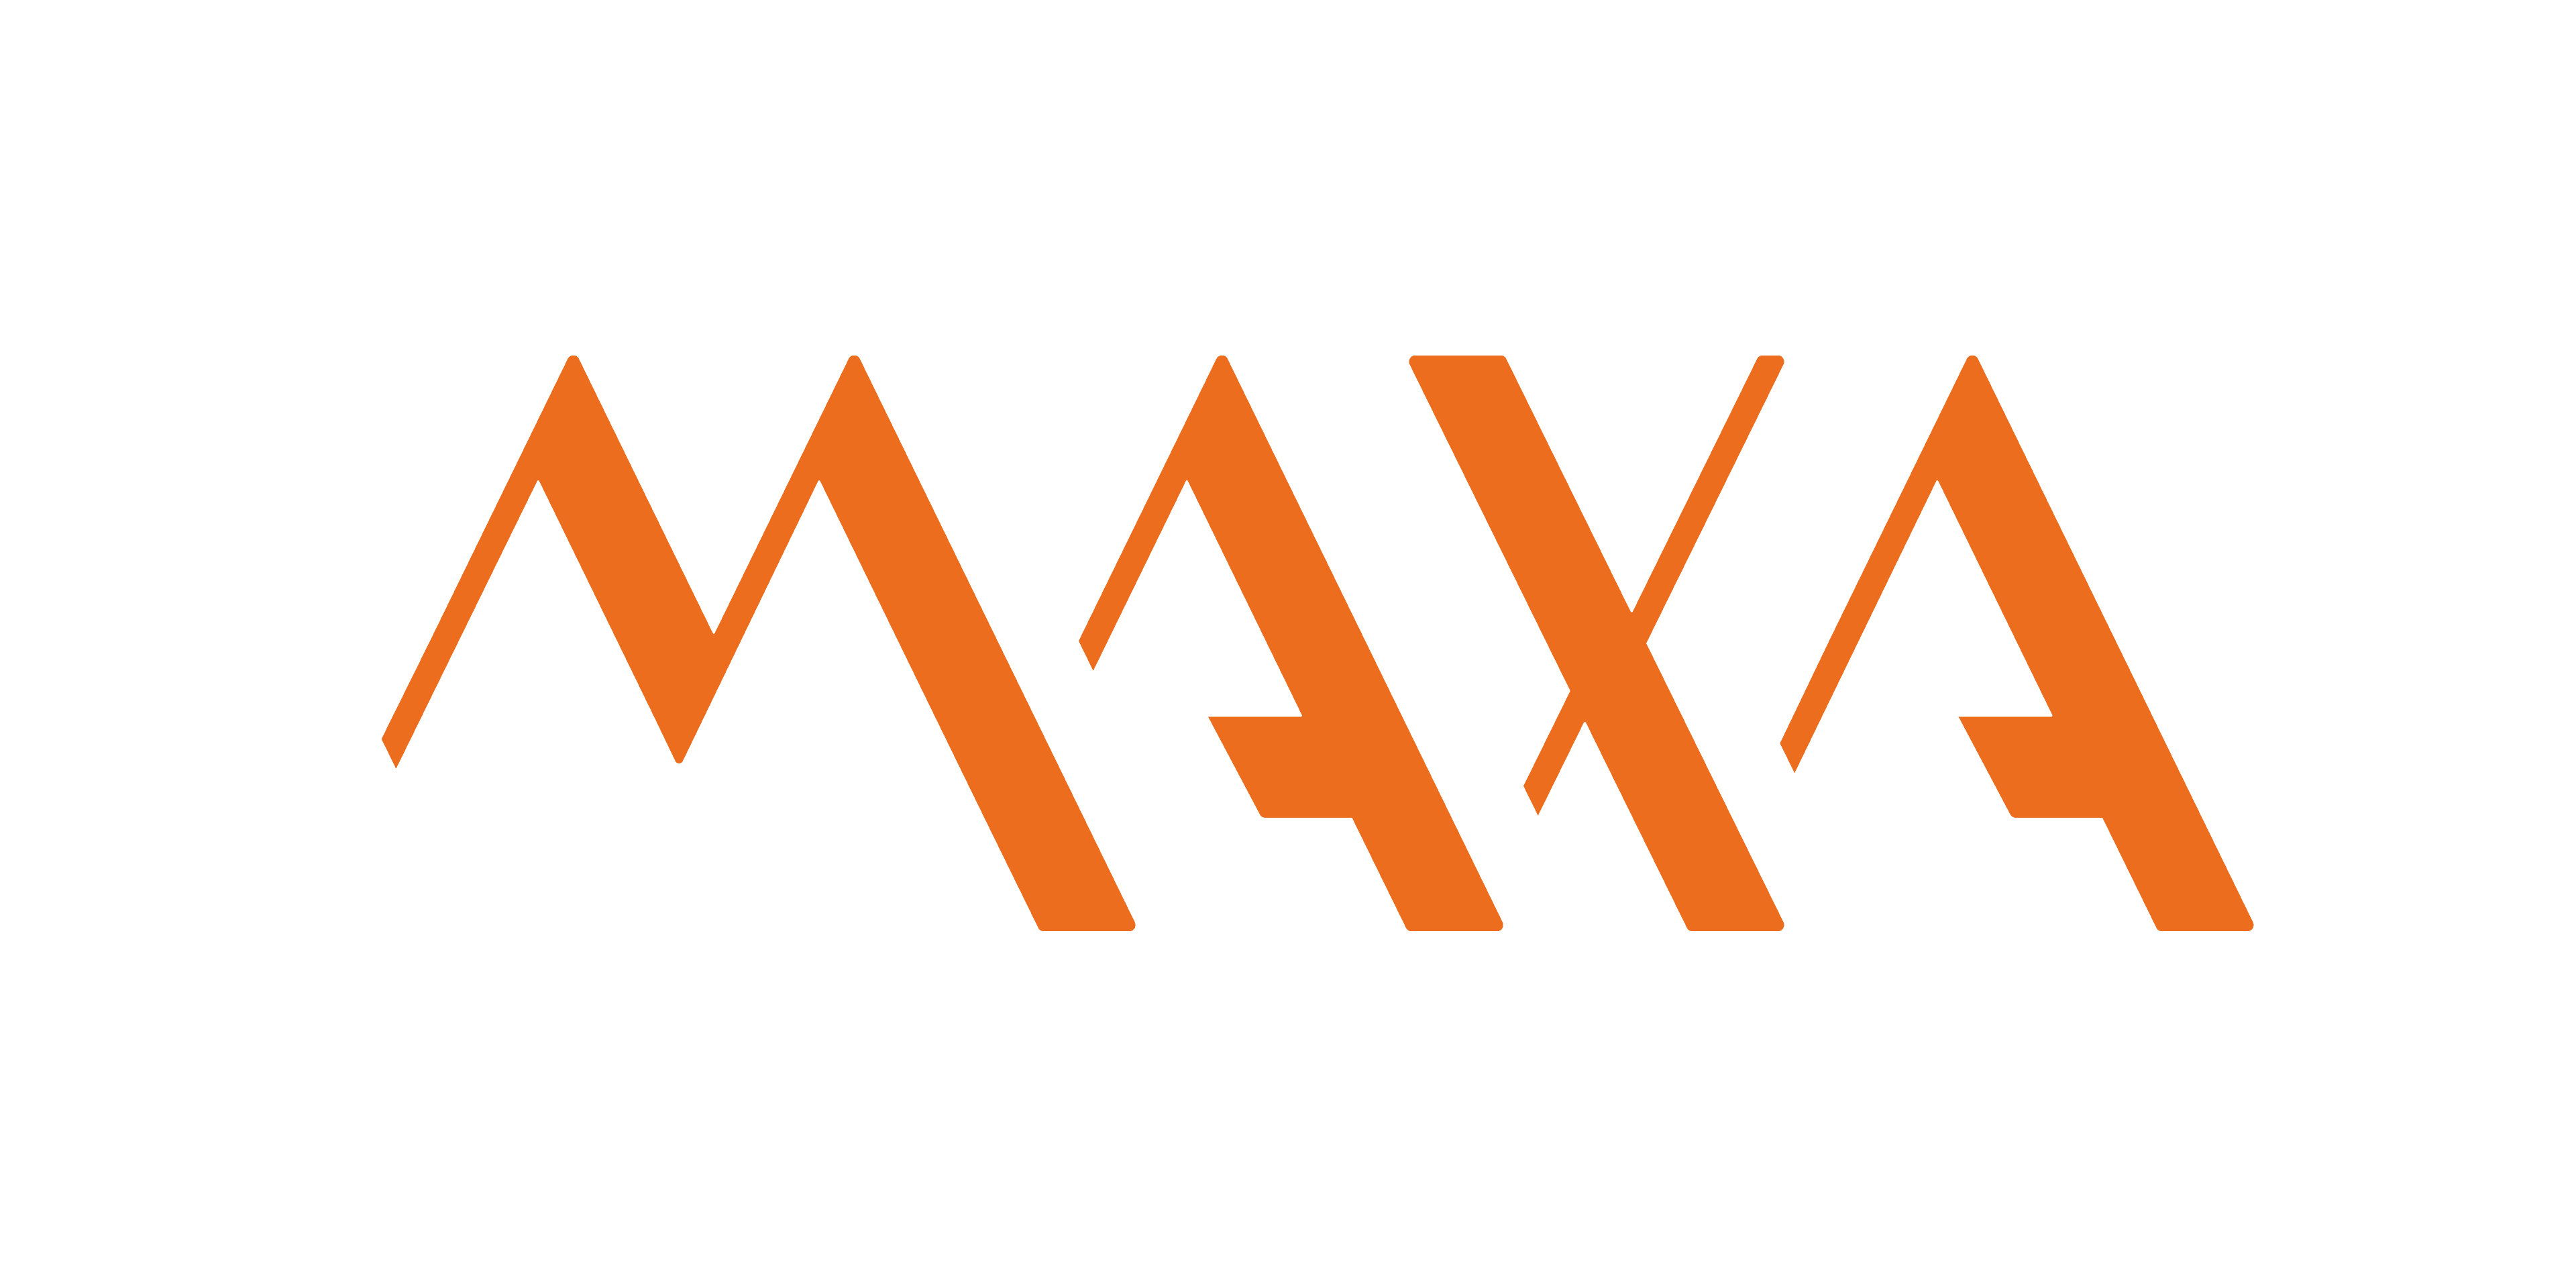 Studio-Maxa-Esteso-ArancioBianco